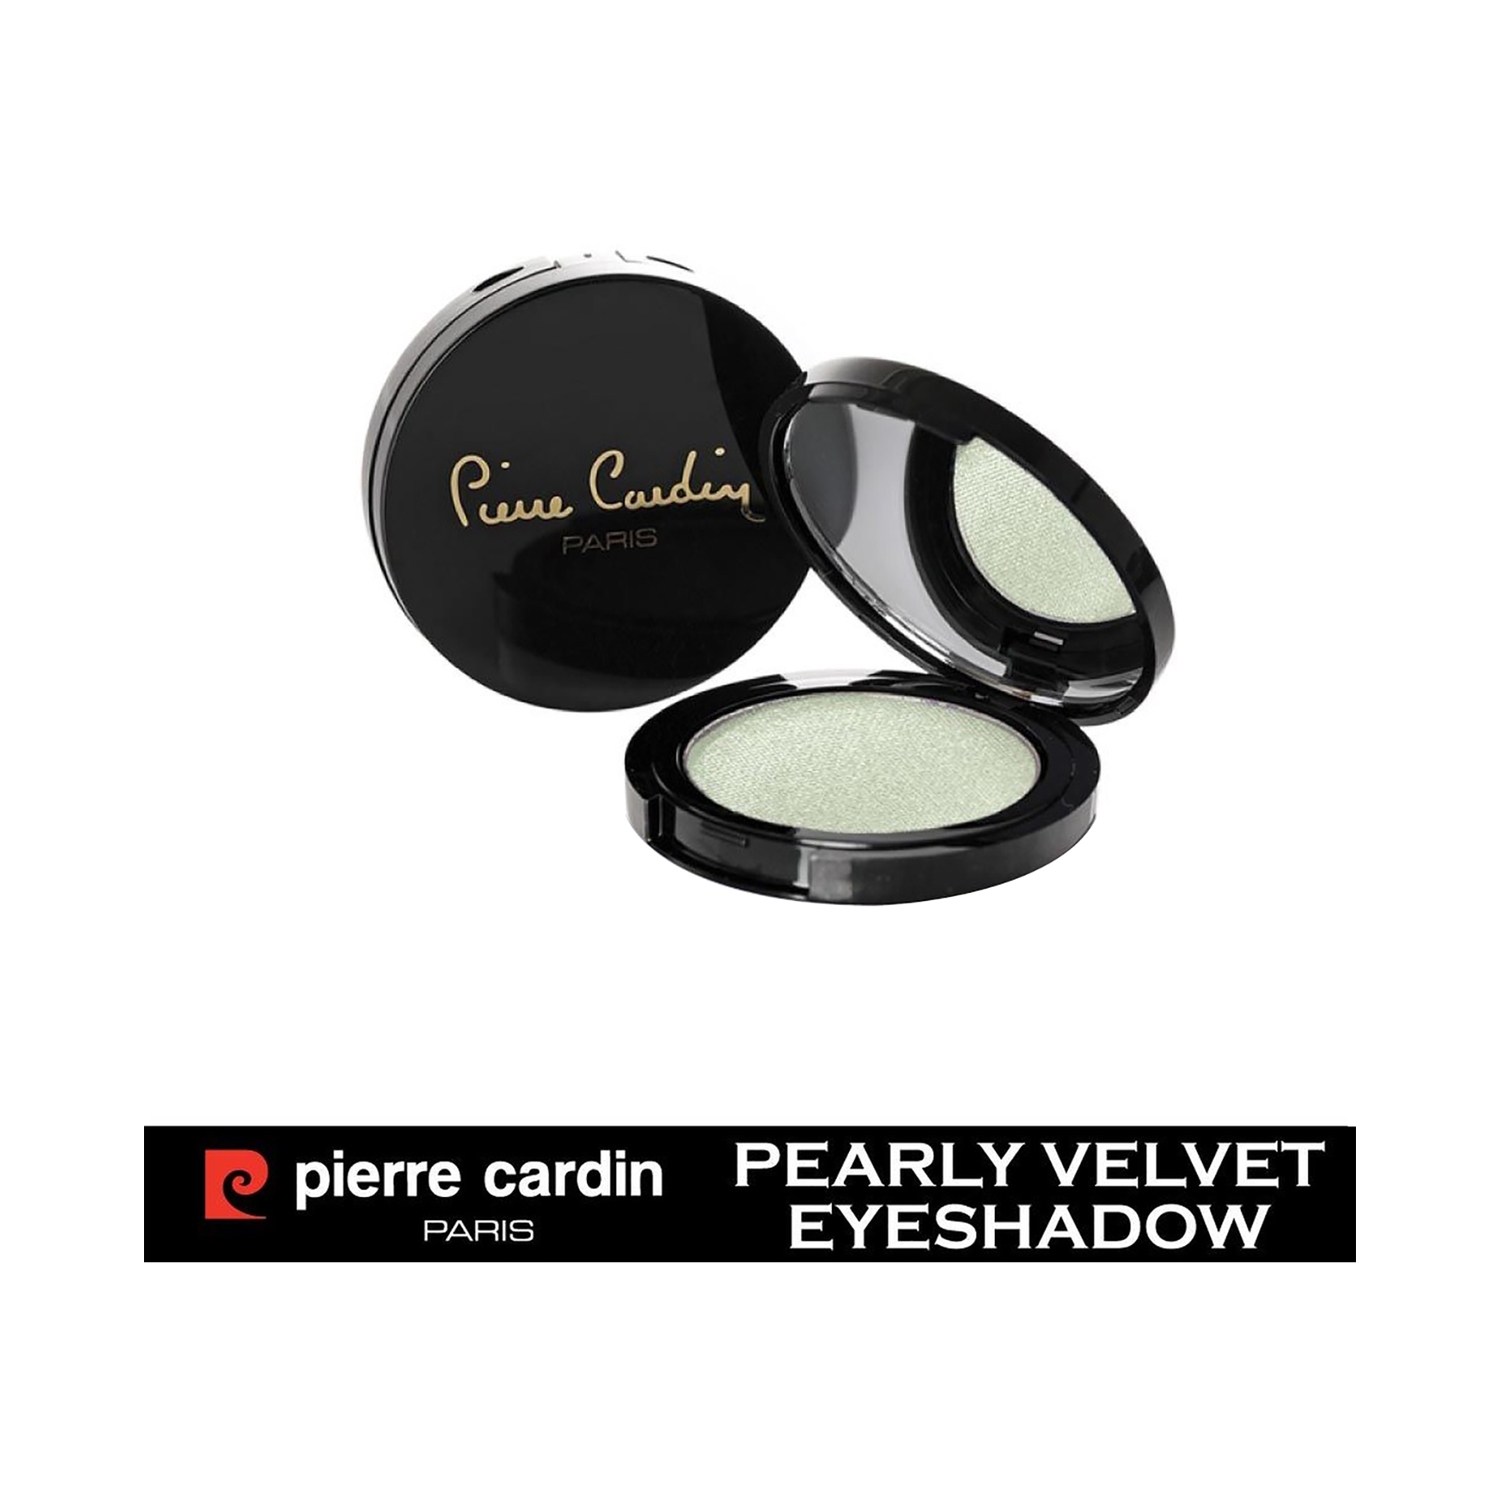 Pierre Cardin Paris Pearly Velvet Eye Shadow - 480 Mint Green (4g)